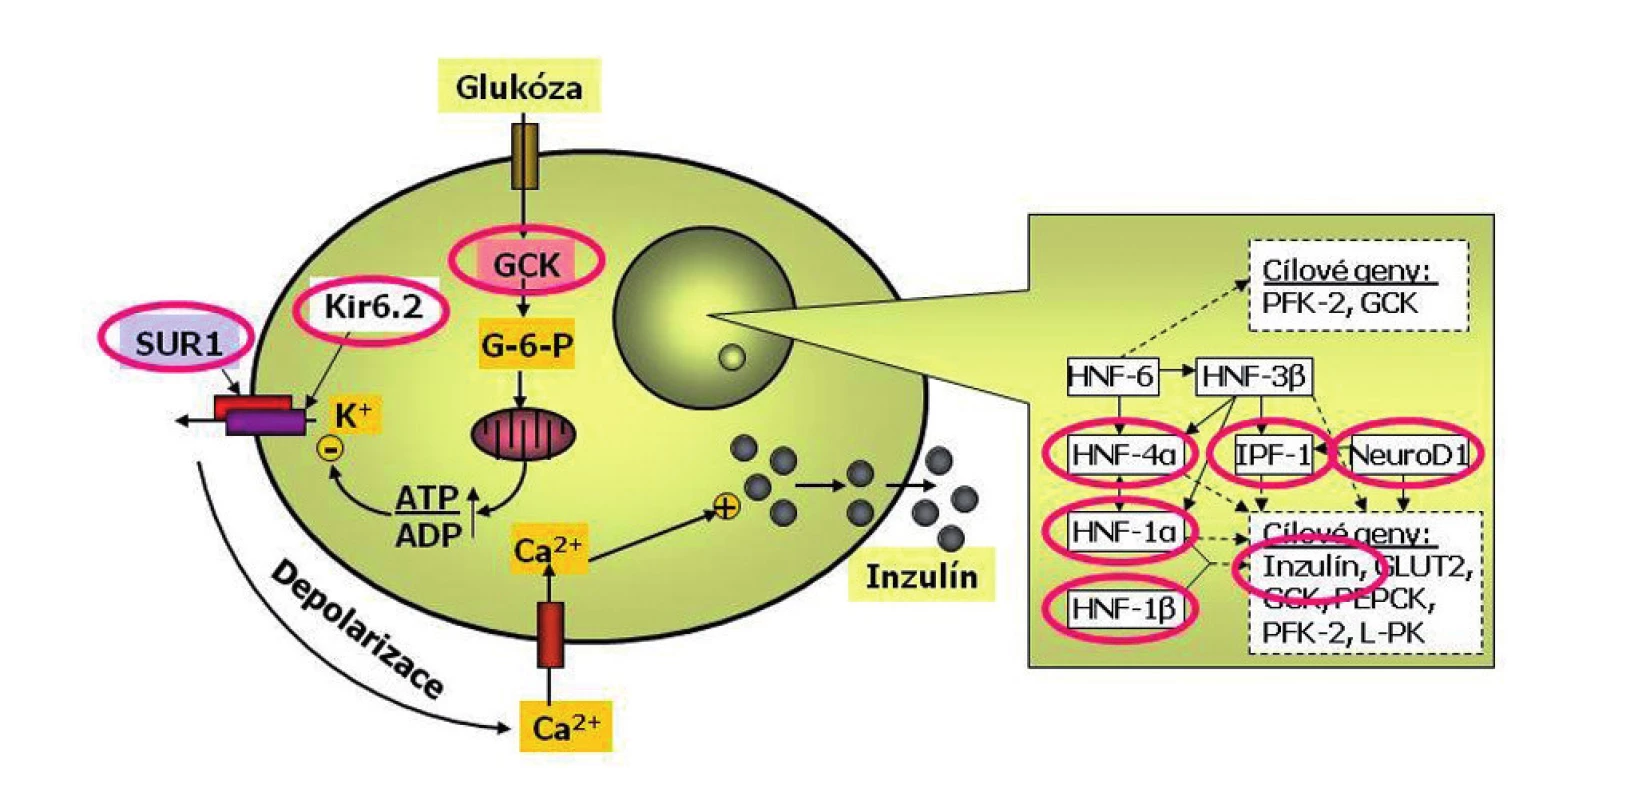 Schéma beta-buňky s vyznačením příčin monogenního diabetu. Beta-buňka je jedna z nejdokonalejších buněk lidského těla. Dokáže trvale sledovat glykémii, vyrábět inzulin do zásoby a vydávat jej do krve s cílem udržovat glykémii v normálním rozmezí a umožnit optimální využití glukózy. Každá betabuňka dokáže za minutu vyrobit až jeden milion molekul inzulinu. Glukóza vstupuje do beta-buňky v závislosti na okolní koncentraci glukózy. V beta-buňce se glukózy ujímá enzym glukokináza (GCK), označovaný jako senzor beta-buňky pro glukózu. Další zpracování glukózy probíhá v mitochondriích a vede ke změně poměru ATP:ADP. To je podnětem pro změnu prostupnosti draslíkového kanálu. Ten má dvě podjednotky – Kir6.2 a SUR1 (tzv. sulfonylureový receptor). Výstup draslíkových iontů z buňky změní membránový potenciál a tím otevře vápníkový kanál. Zvýšení koncentrace vápníkových iontů v beta-buňce je podnětem pro exocytózu inzulinu. Přepis klíčových genů v jádře beta-buňky je kontrolován transkripční regulační sítí. Porucha některého jejího článku může  způsobit tzv. diabetes transkripčních faktorů. Příčinou diabetu může být i porucha inzulinového genu (podle Štěpánky Průhové).